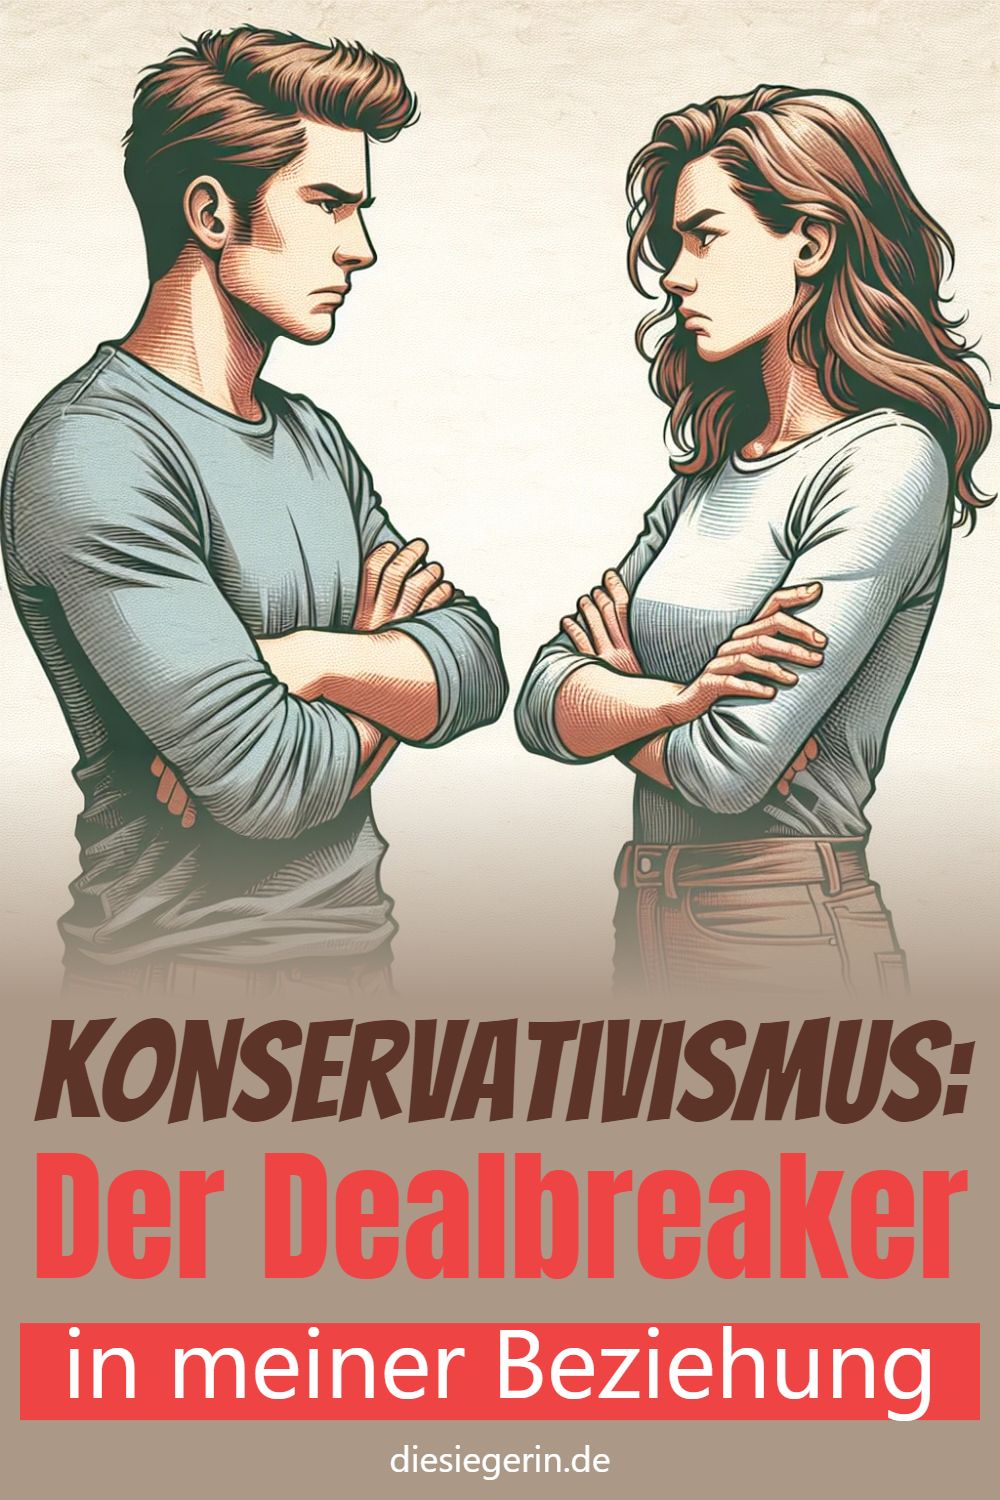 Konservativismus: Der Dealbreaker in meiner Beziehung